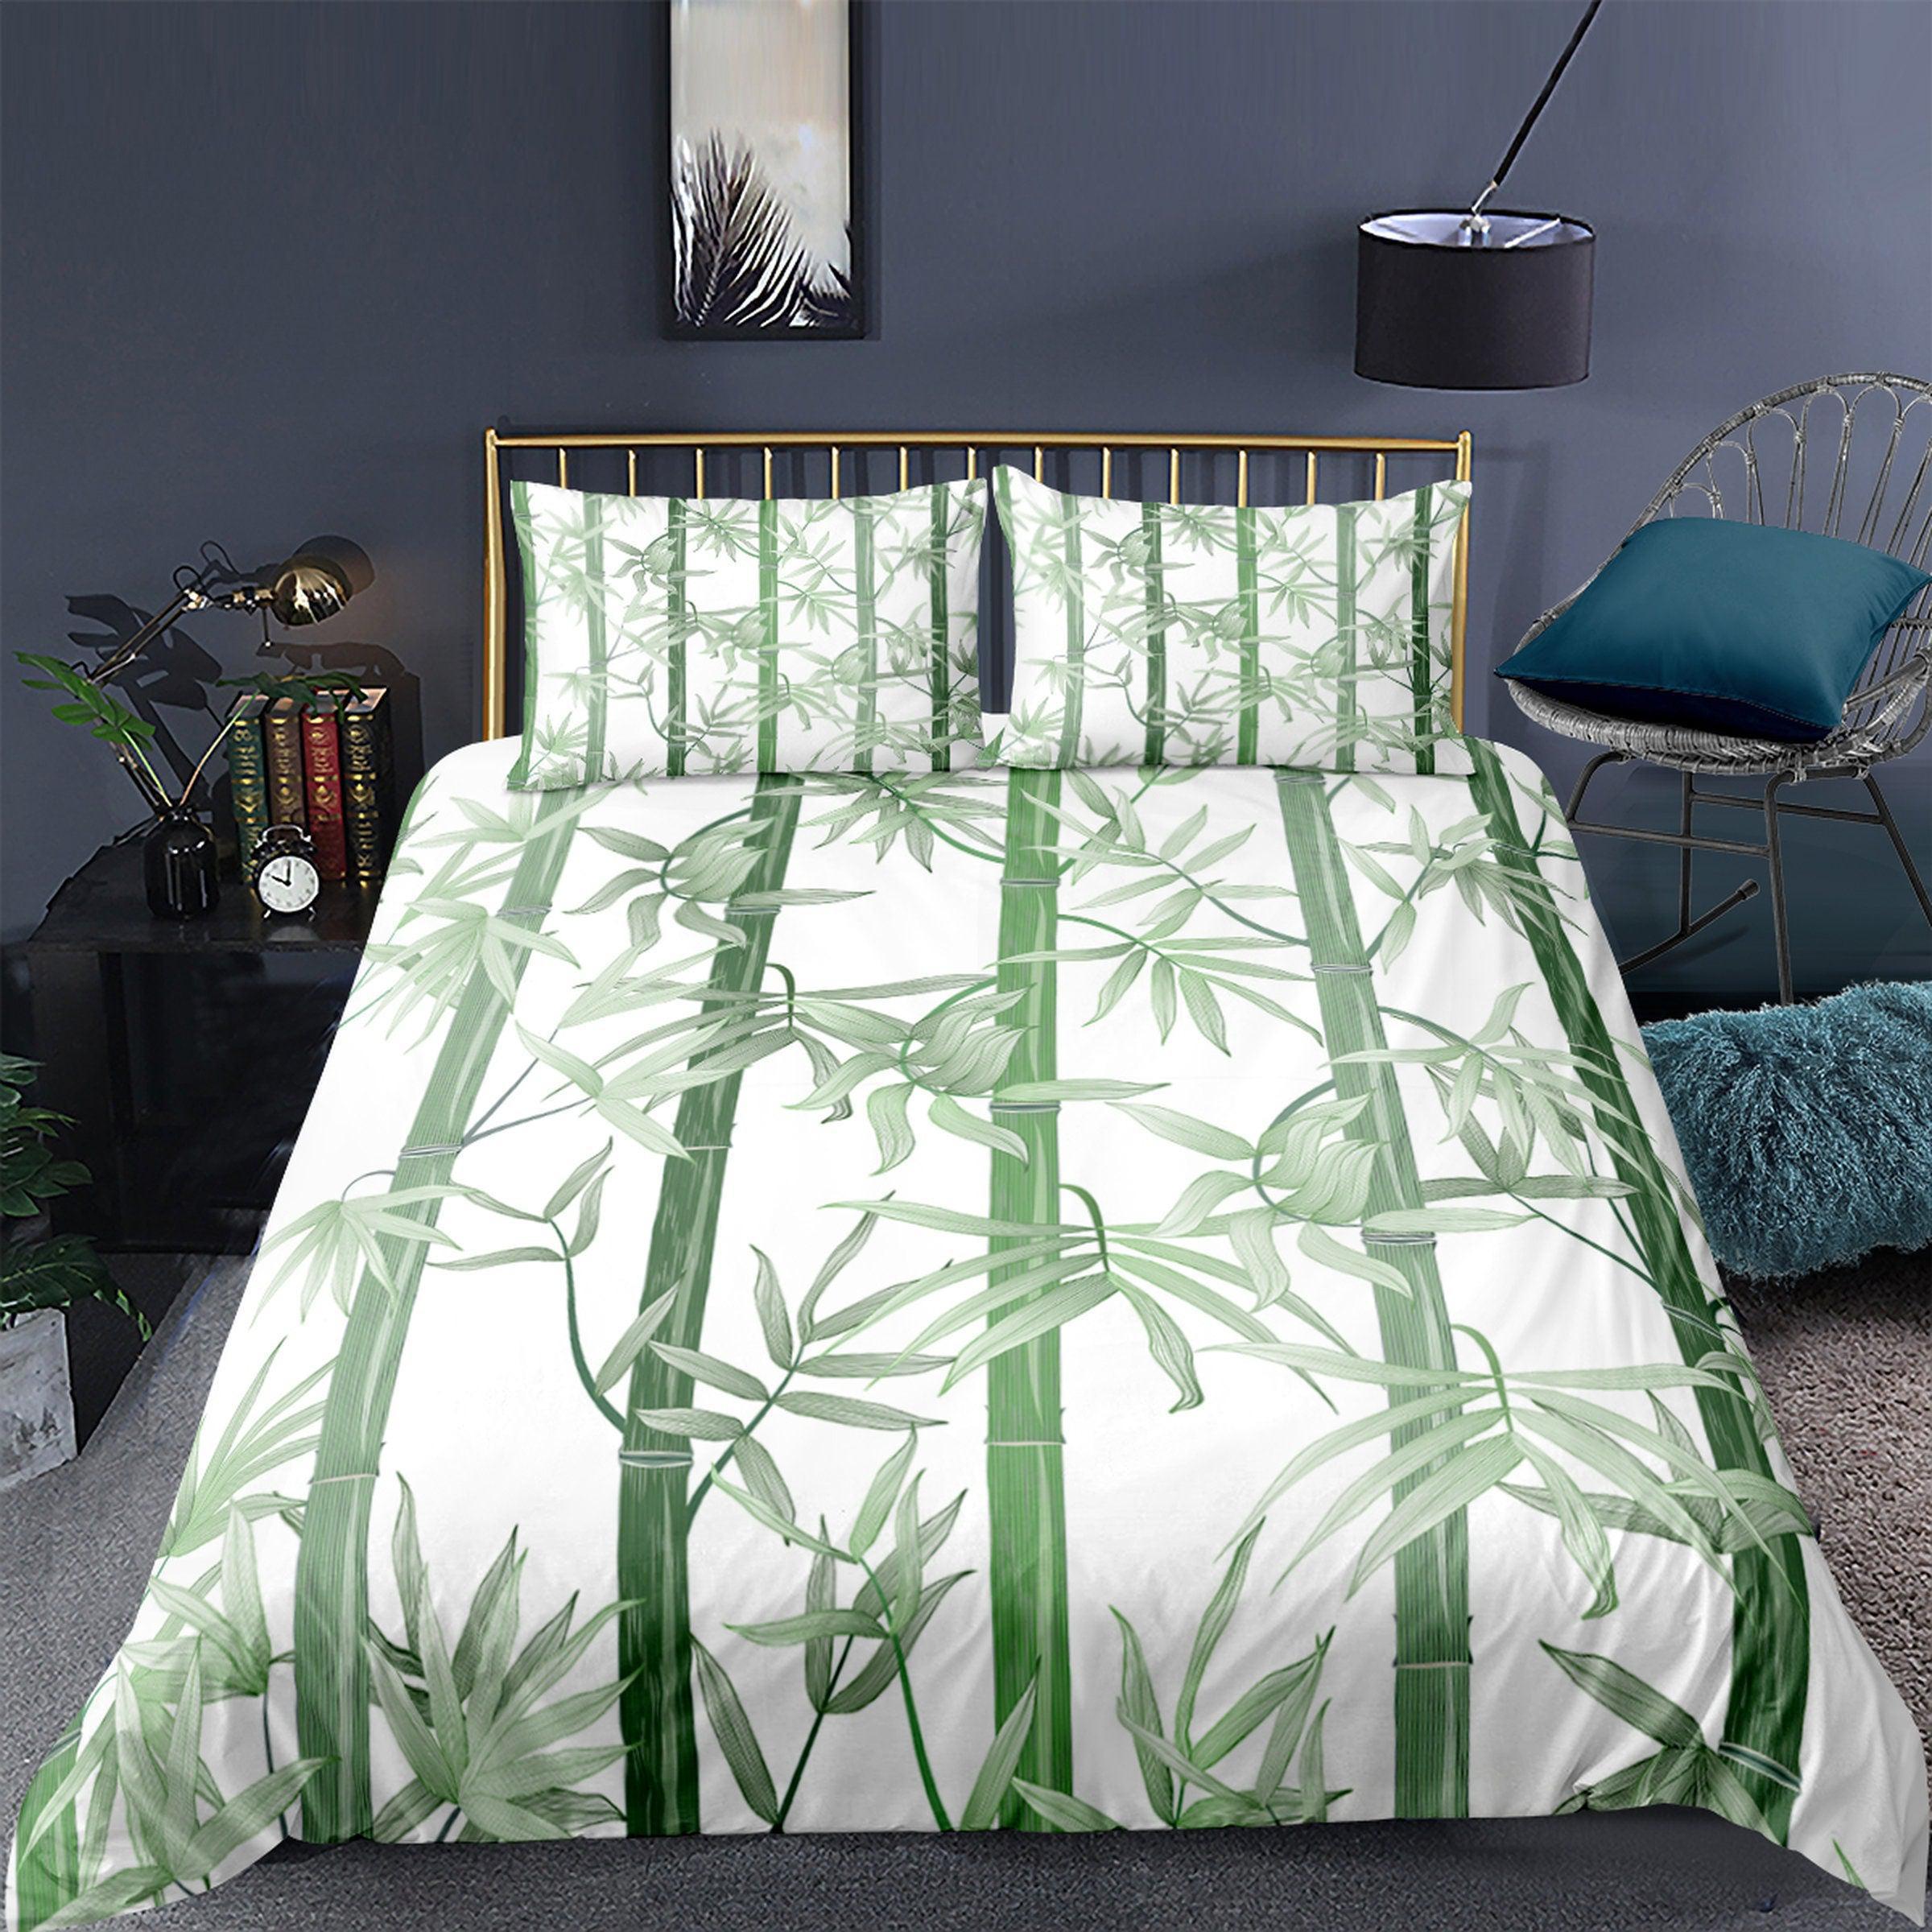 daintyduvet Botanical Duvet Cover Set Lucky Bamboo, White Bedspread Dorm Bedding Set